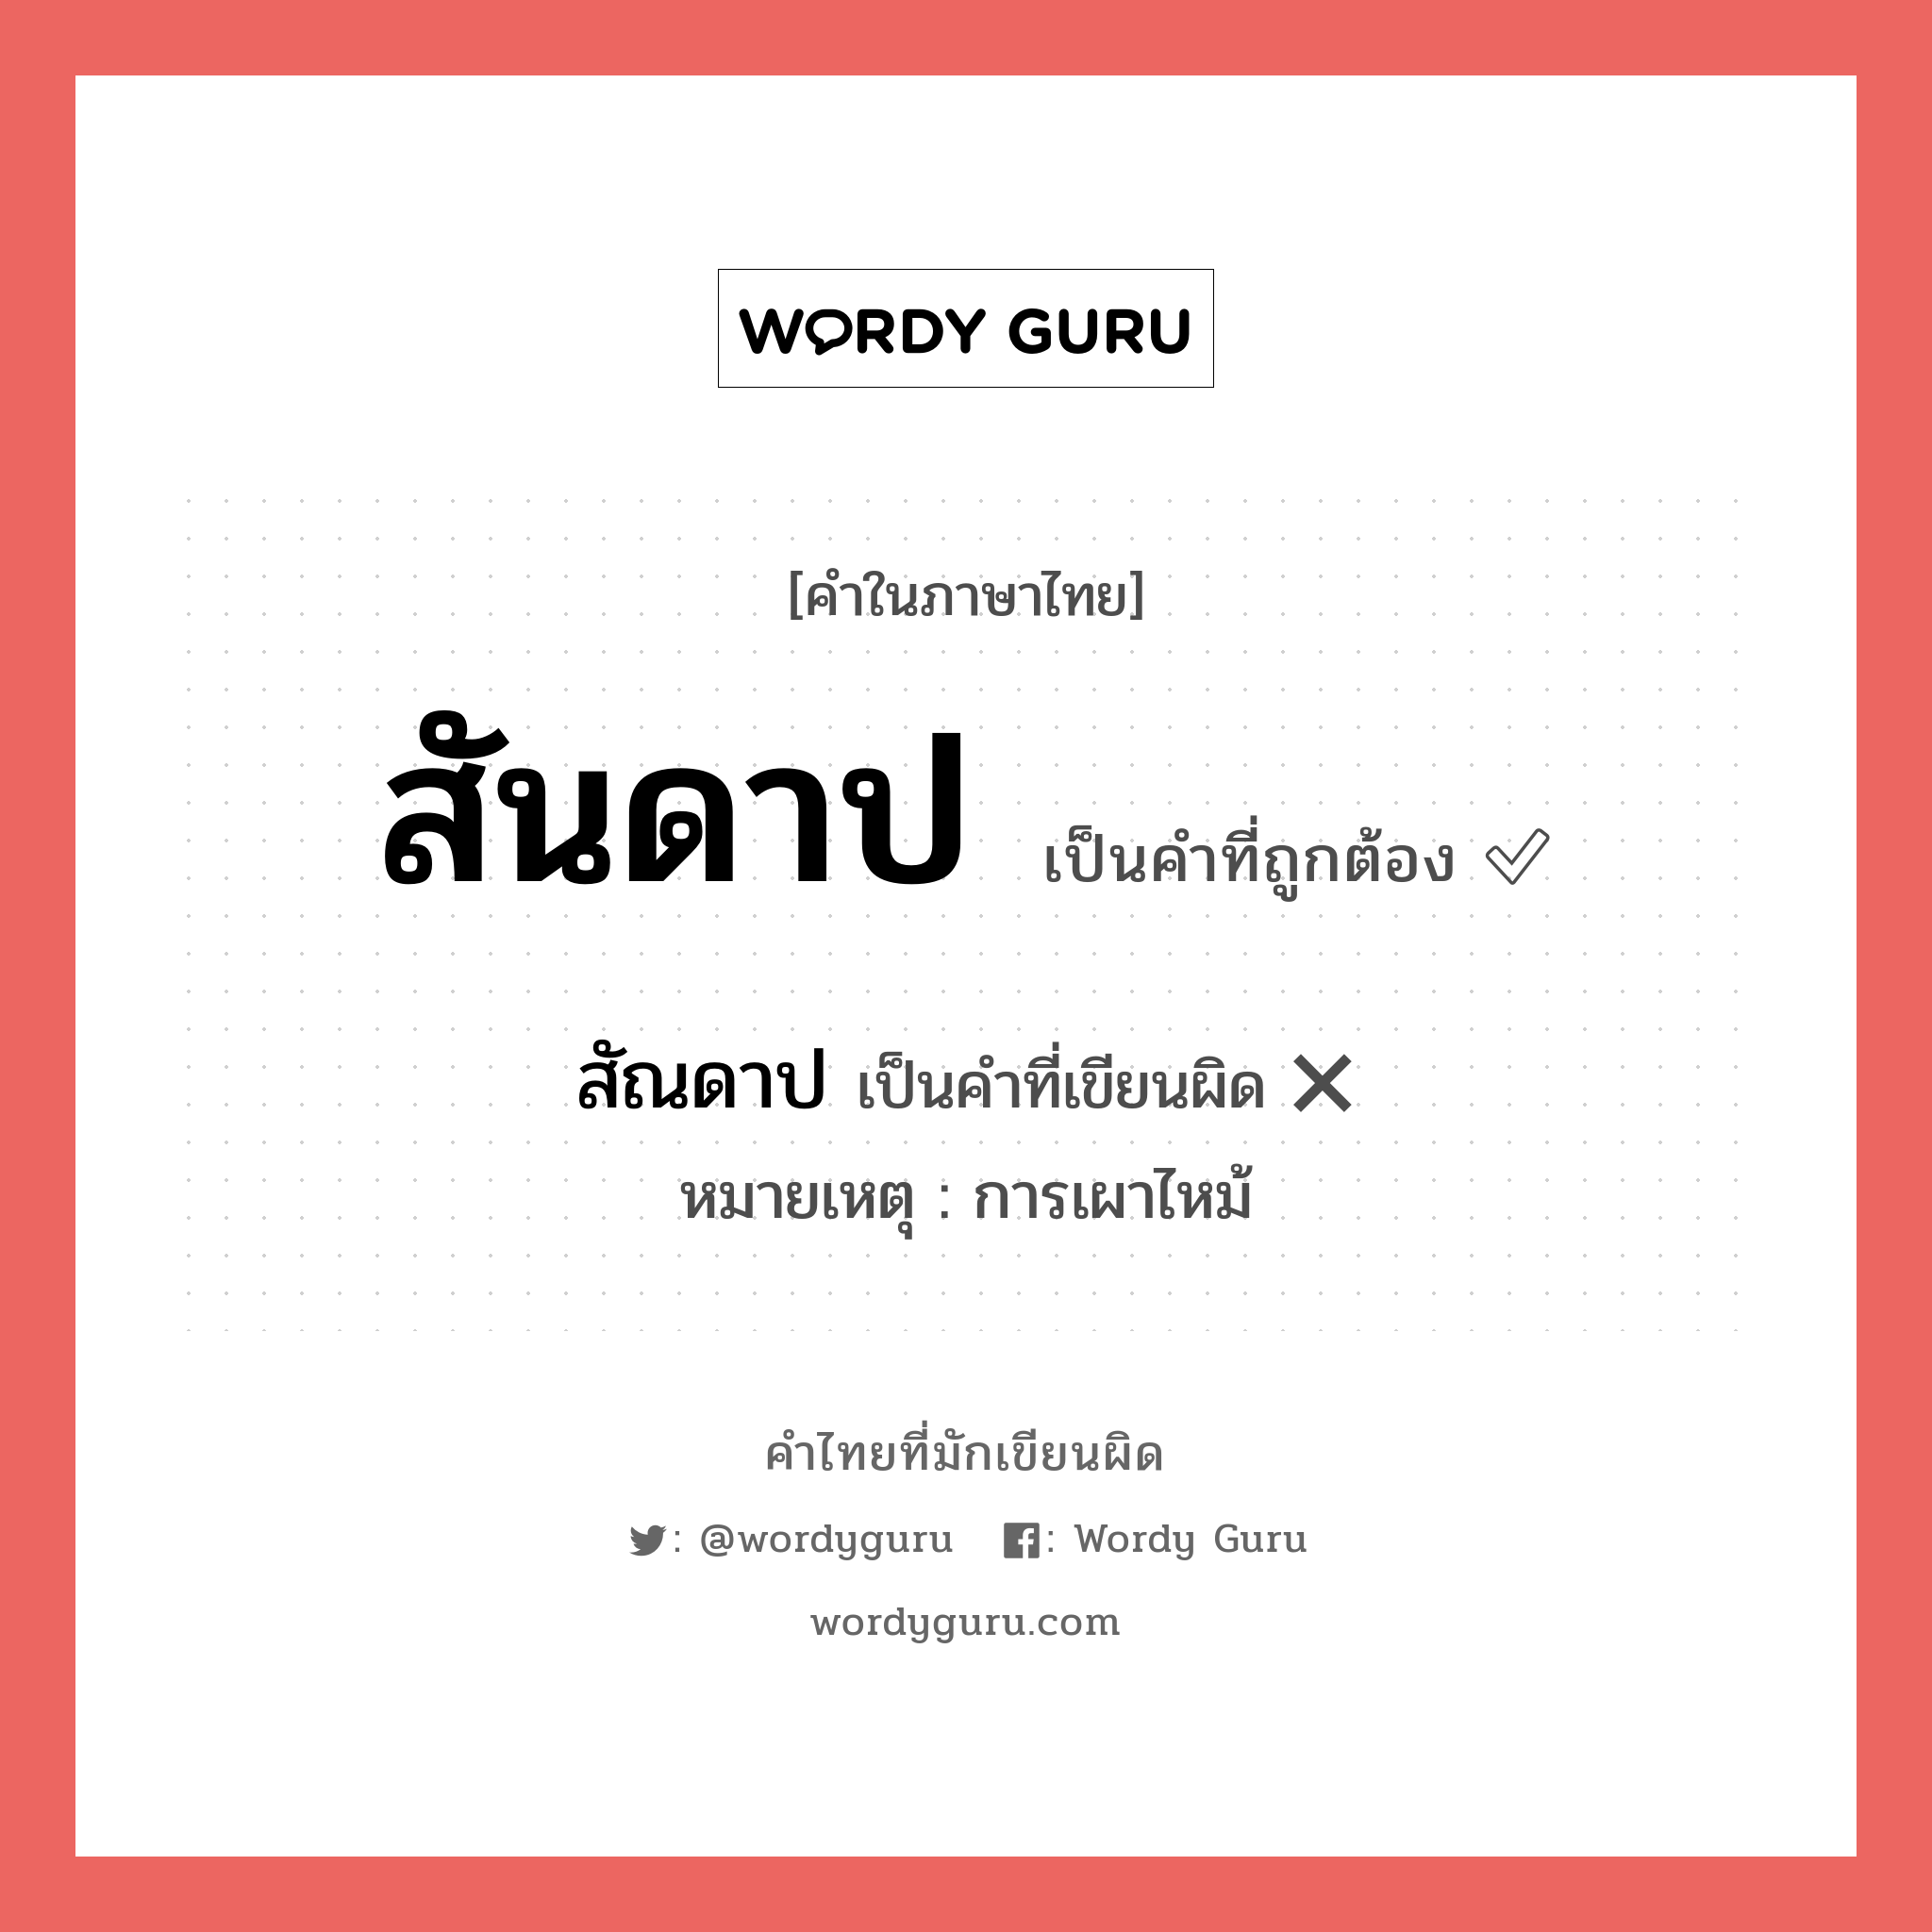 สัณดาป หรือ สันดาป คำไหนเขียนถูก?, คำในภาษาไทยที่มักเขียนผิด สัณดาป คำที่ผิด ❌ สันดาป หมายเหตุ การเผาไหม้